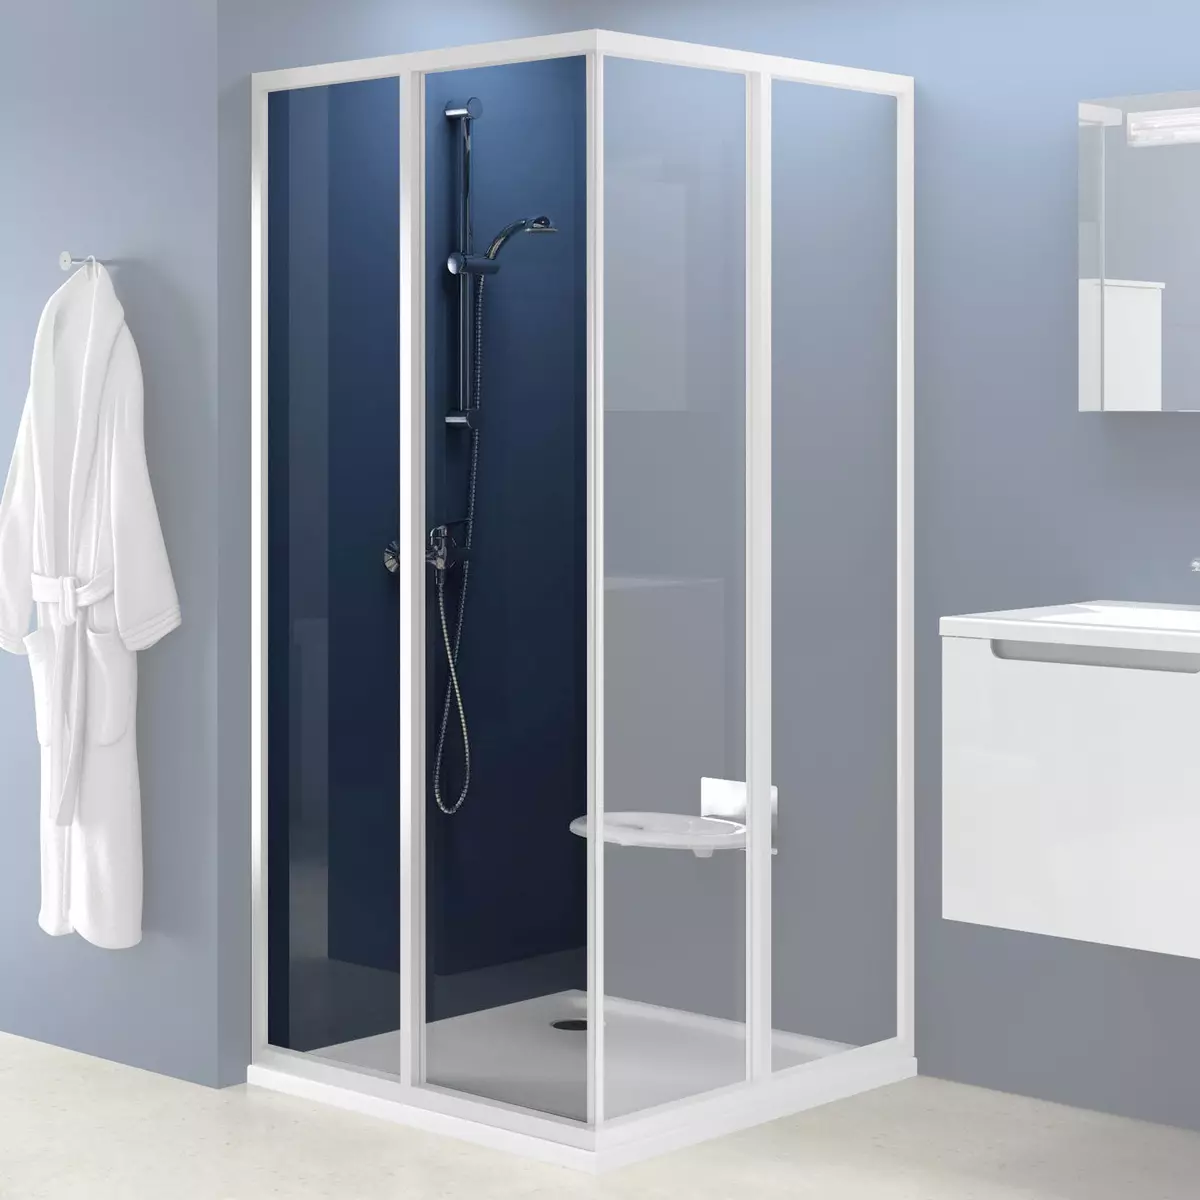 Tuš v kopalnici brez kabine (86 fotografij): možnosti oblikovanja kopalnice s prho brez palet in ploščice kabin, projektov 21384_59